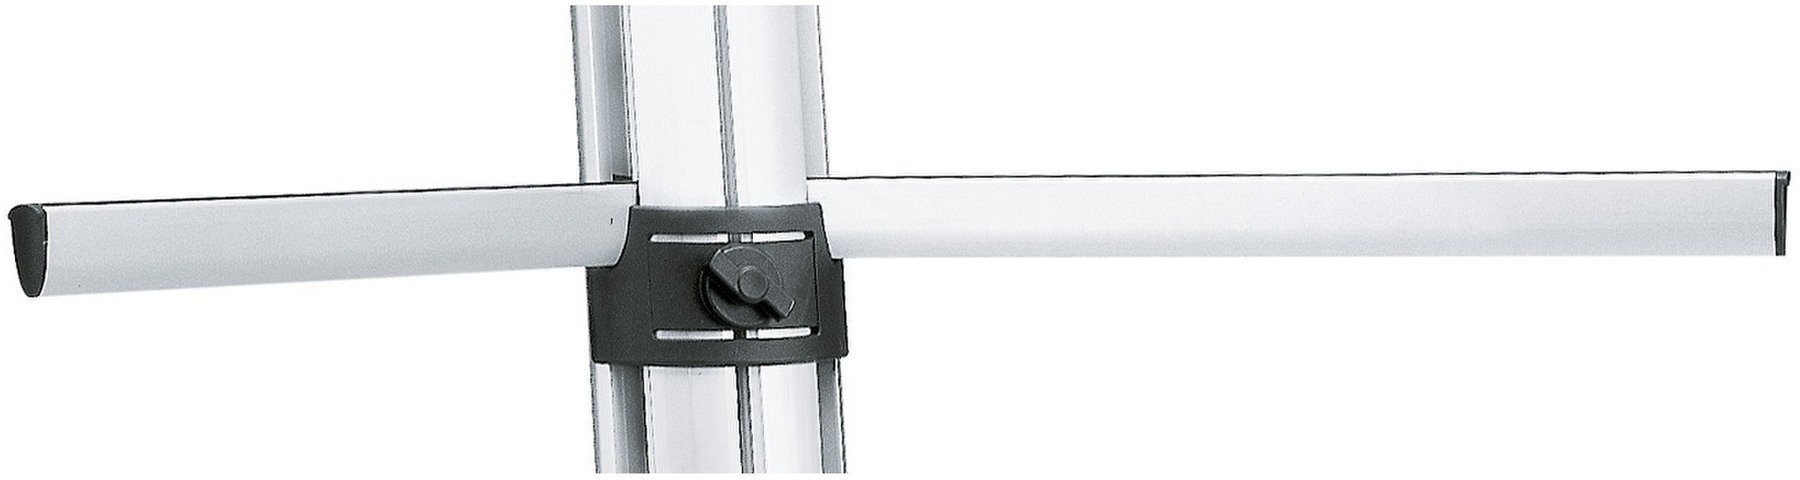 Accessori per supporti per tastiera
 Konig & Meyer 18855 Support arm set - anodized aluminum